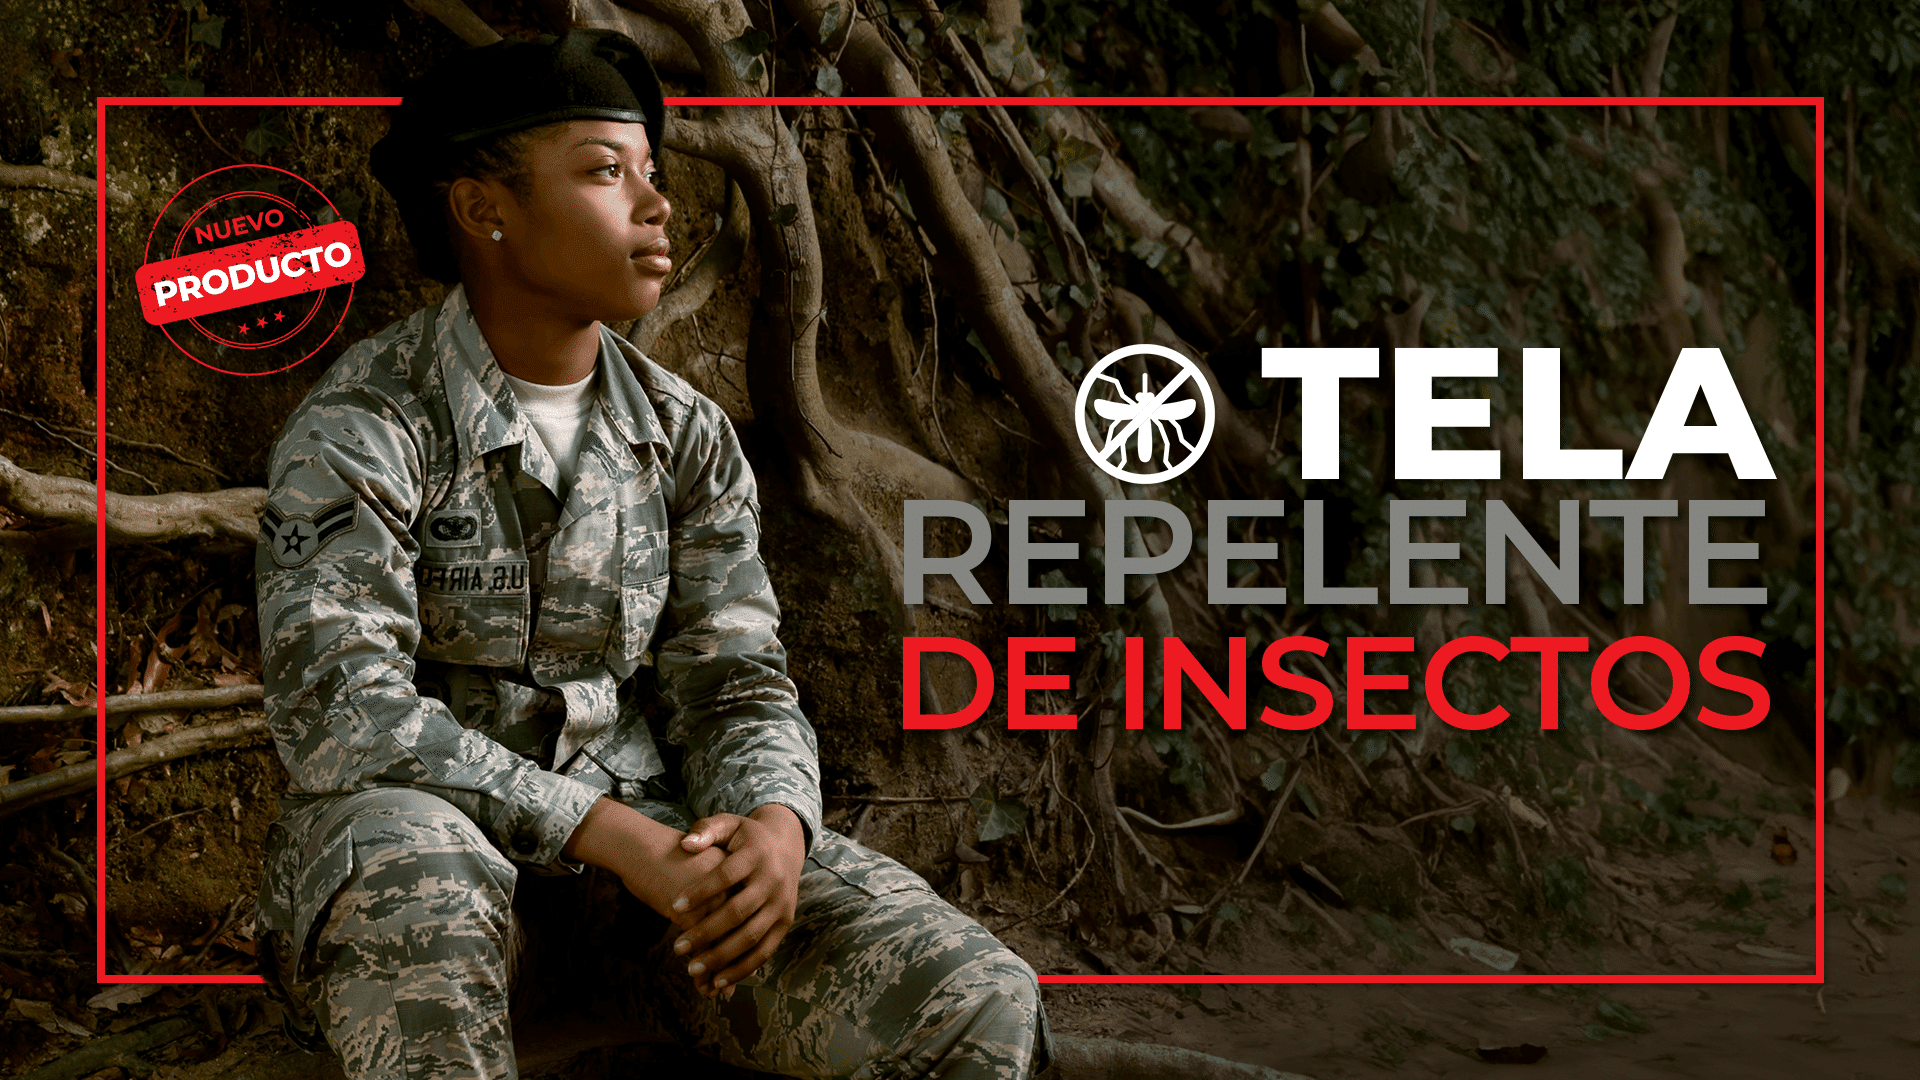 Raff Military Textile comienza una nueva era con uniformes repelentes a los insectos y a prueba de fuego